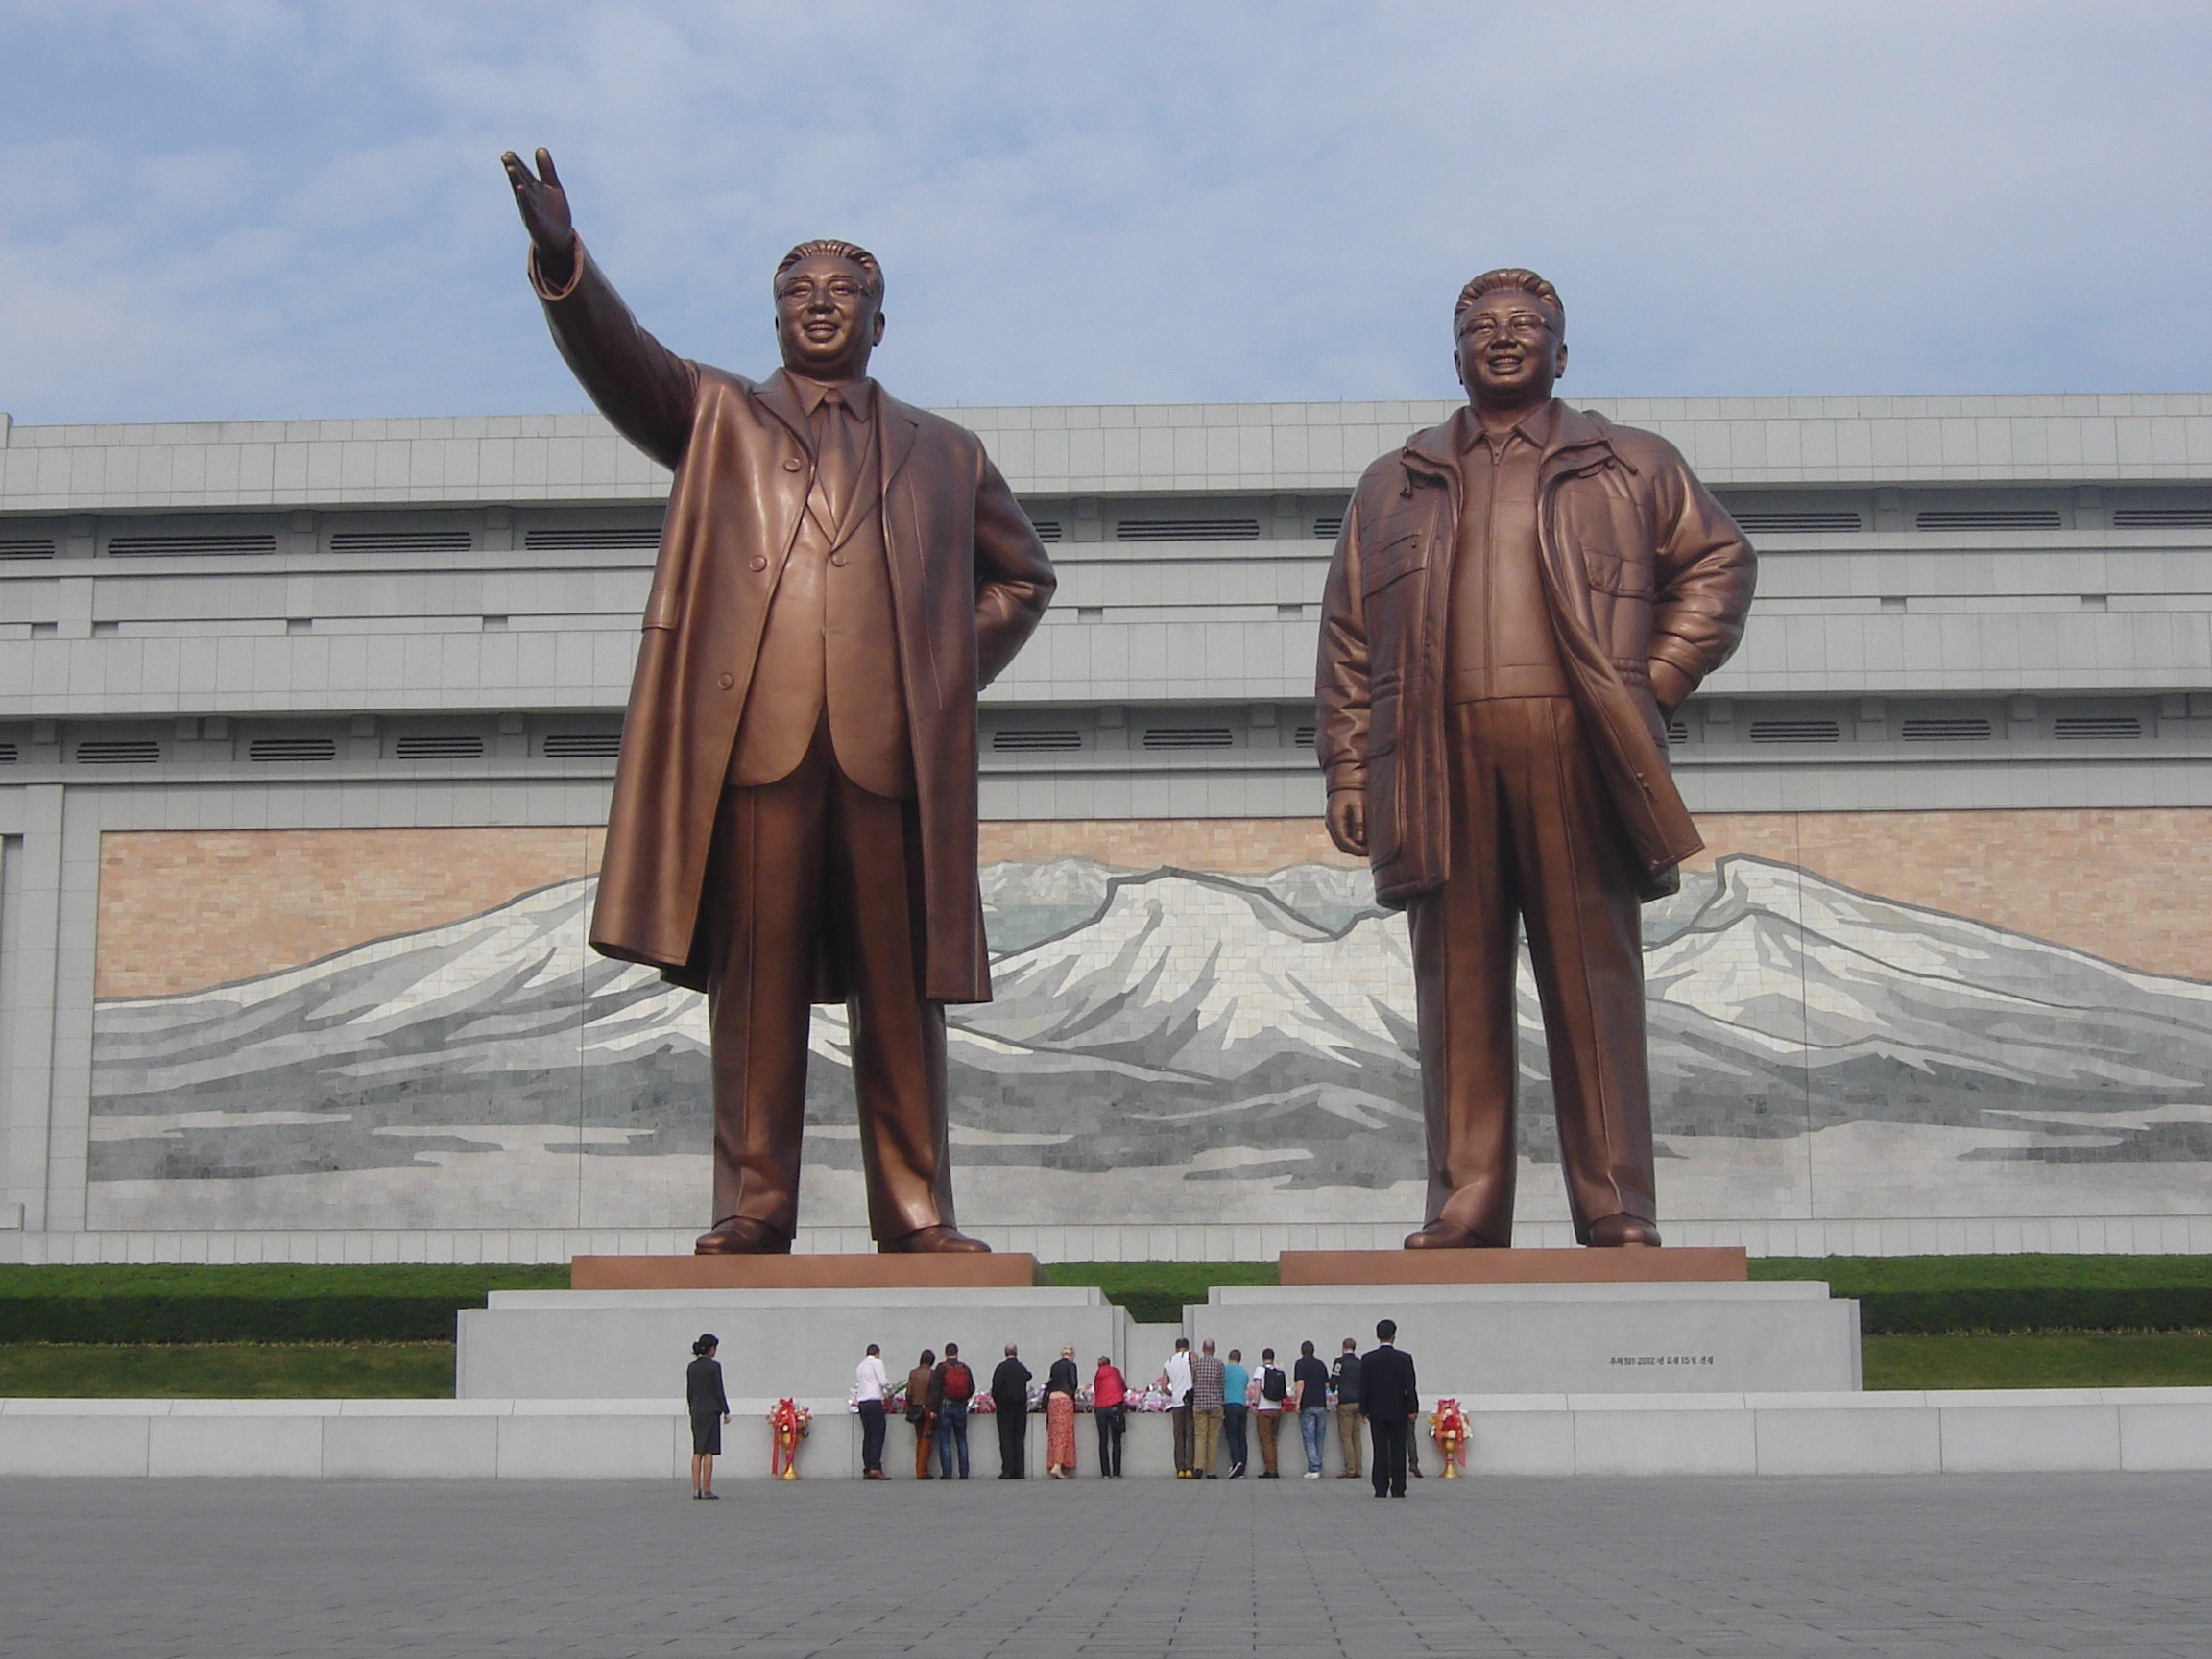 Mansu Hill Grand Monument in North Korea